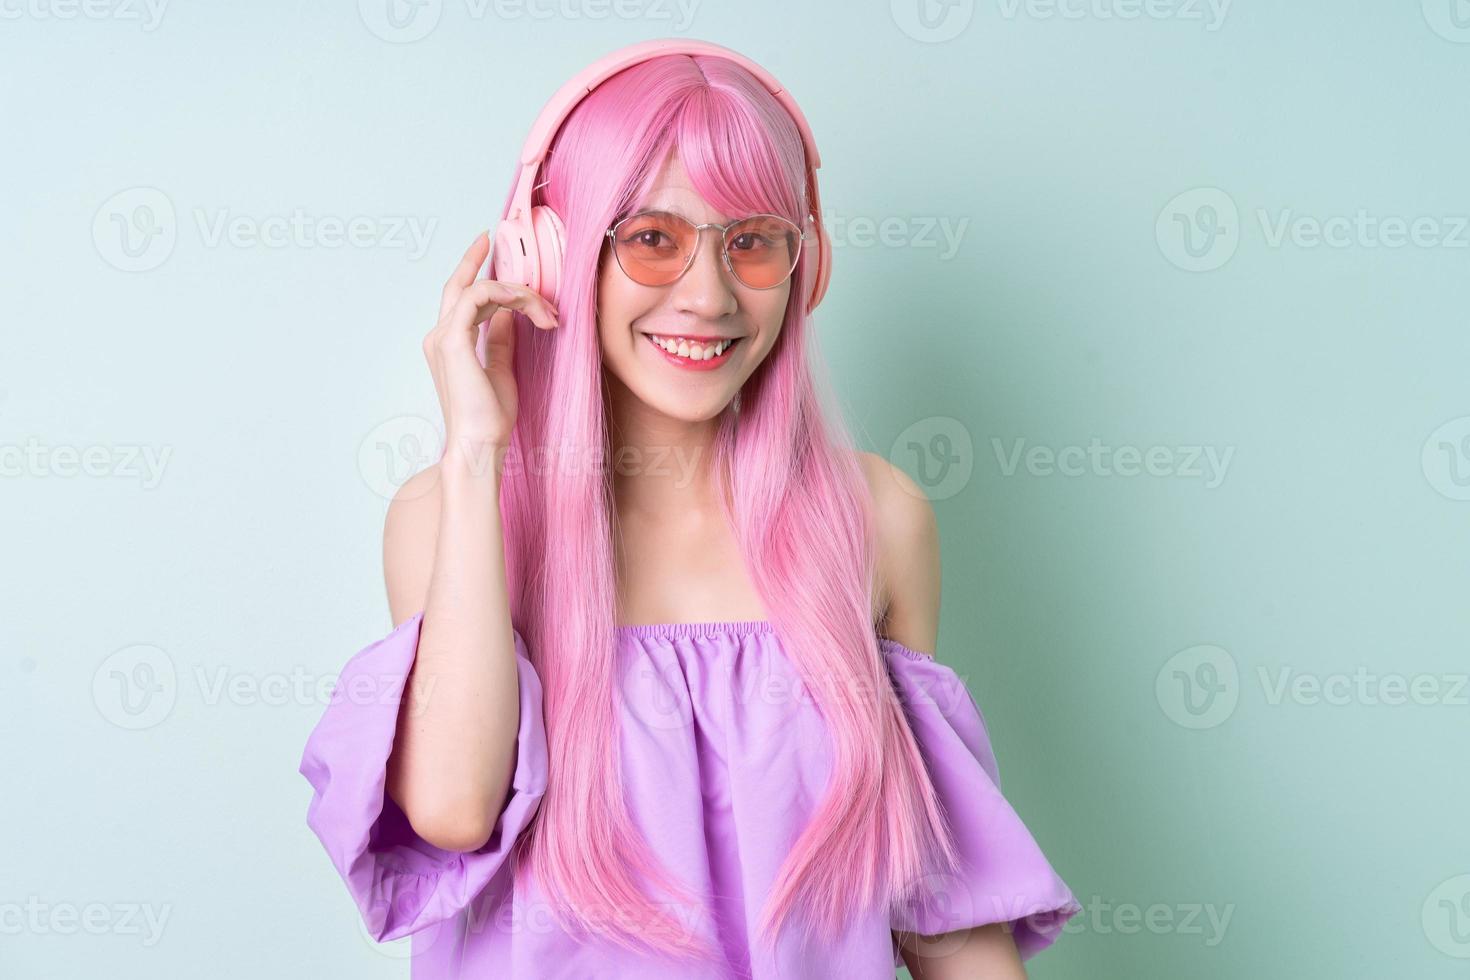 jonge Aziatische vrouw met roze haar poseren op groene achtergrond foto